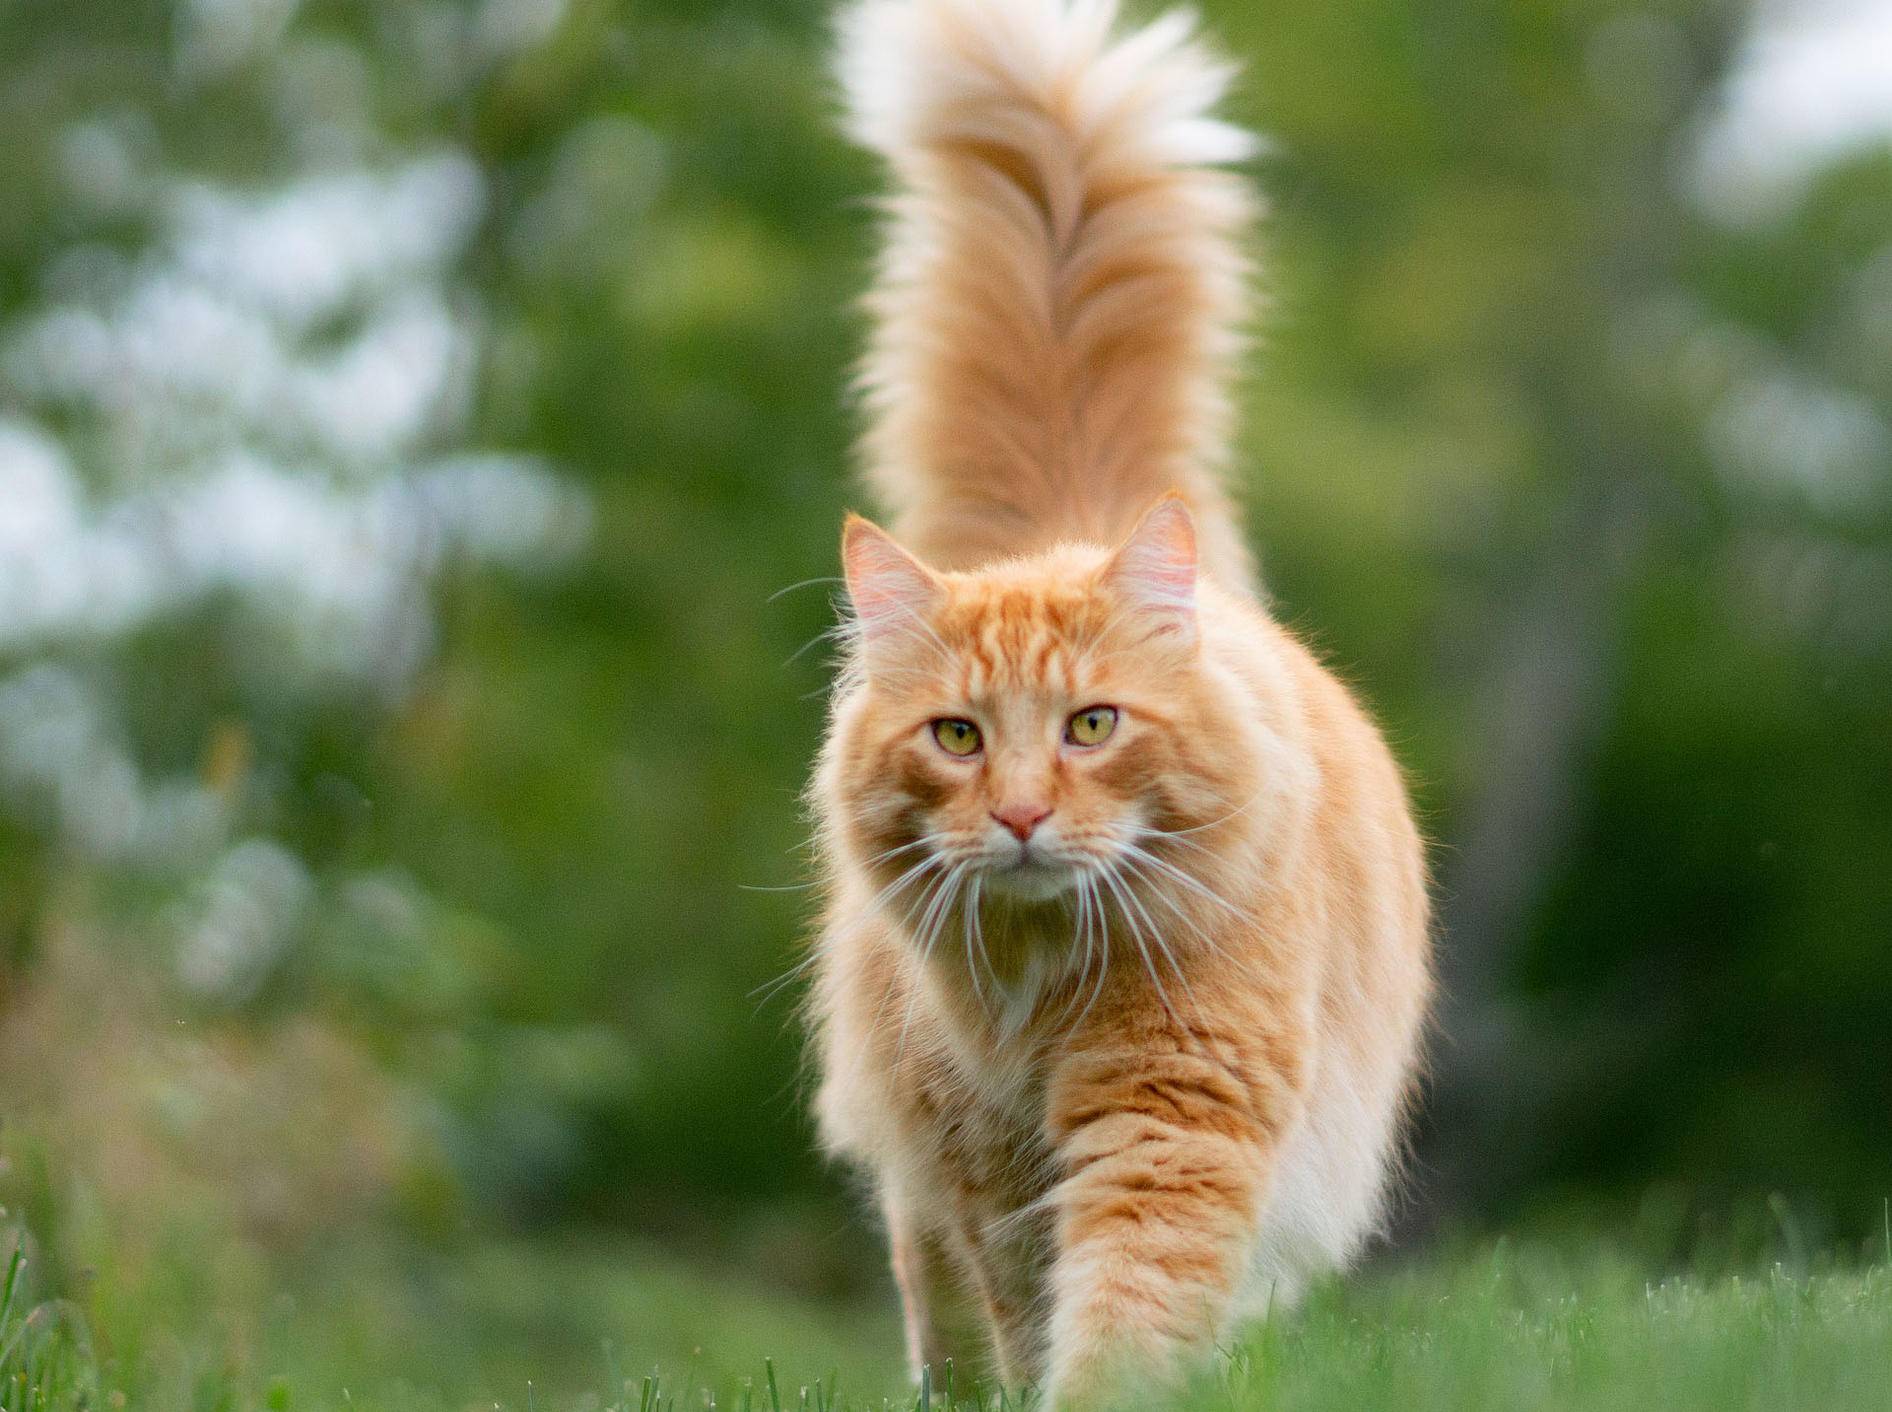 Cat agility - Wählen Sie dem Favoriten unserer Redaktion